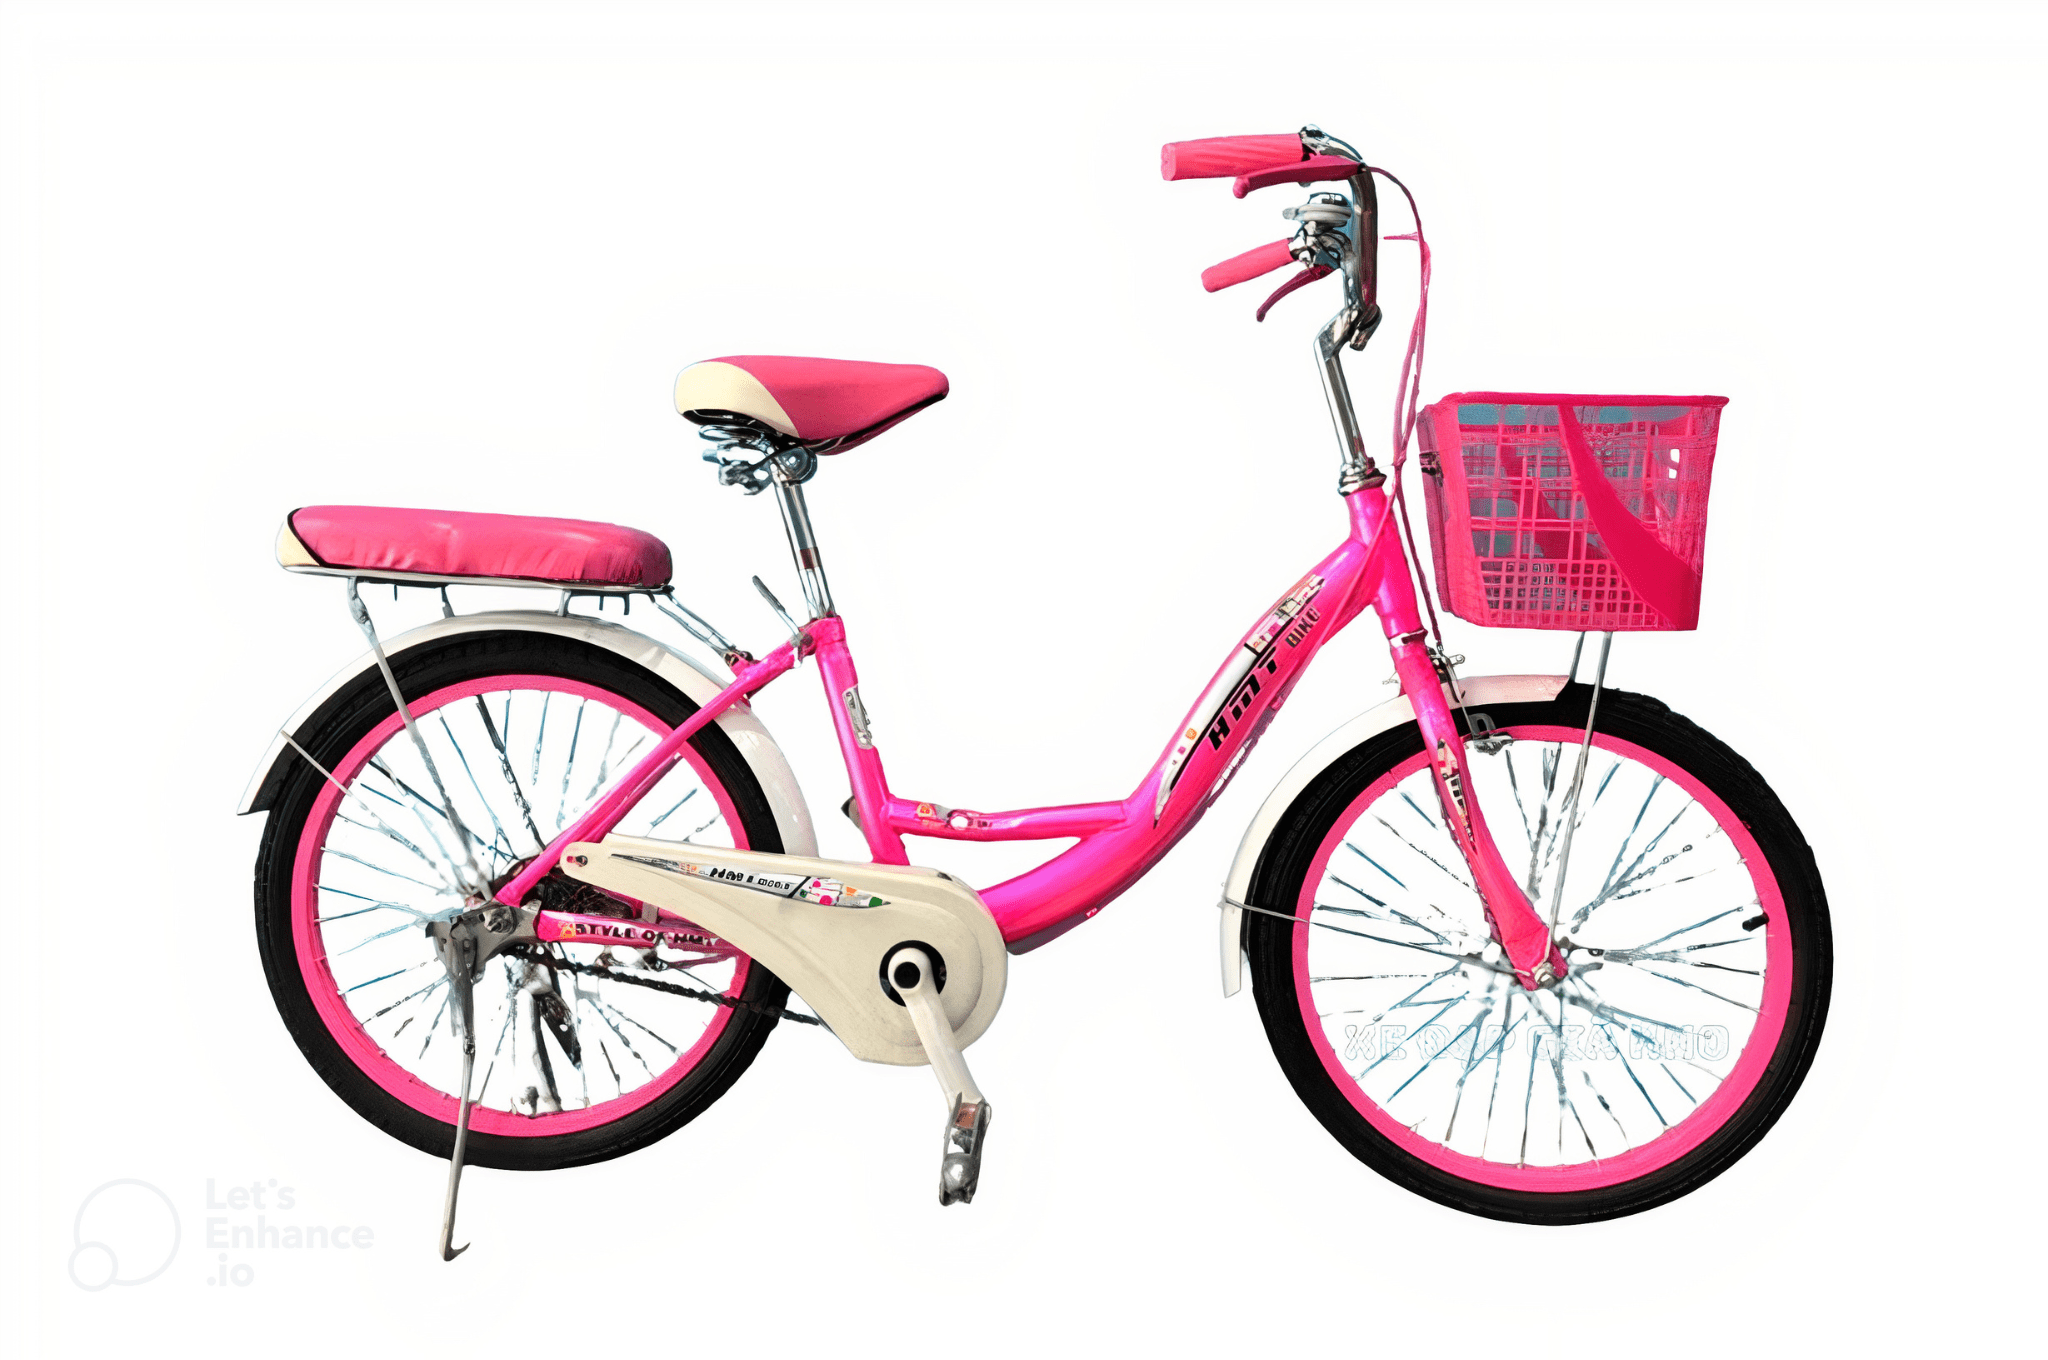 Với màu hồng thật ngọt ngào và dễ thương, chiếc xe đạp này được thiết kế để nổi bật và thu hút mọi ánh nhìn. Hãy xem hình ảnh để khám phá đầy đủ vẻ đẹp của chiếc xe đạp màu hồng đầy sức sống này.